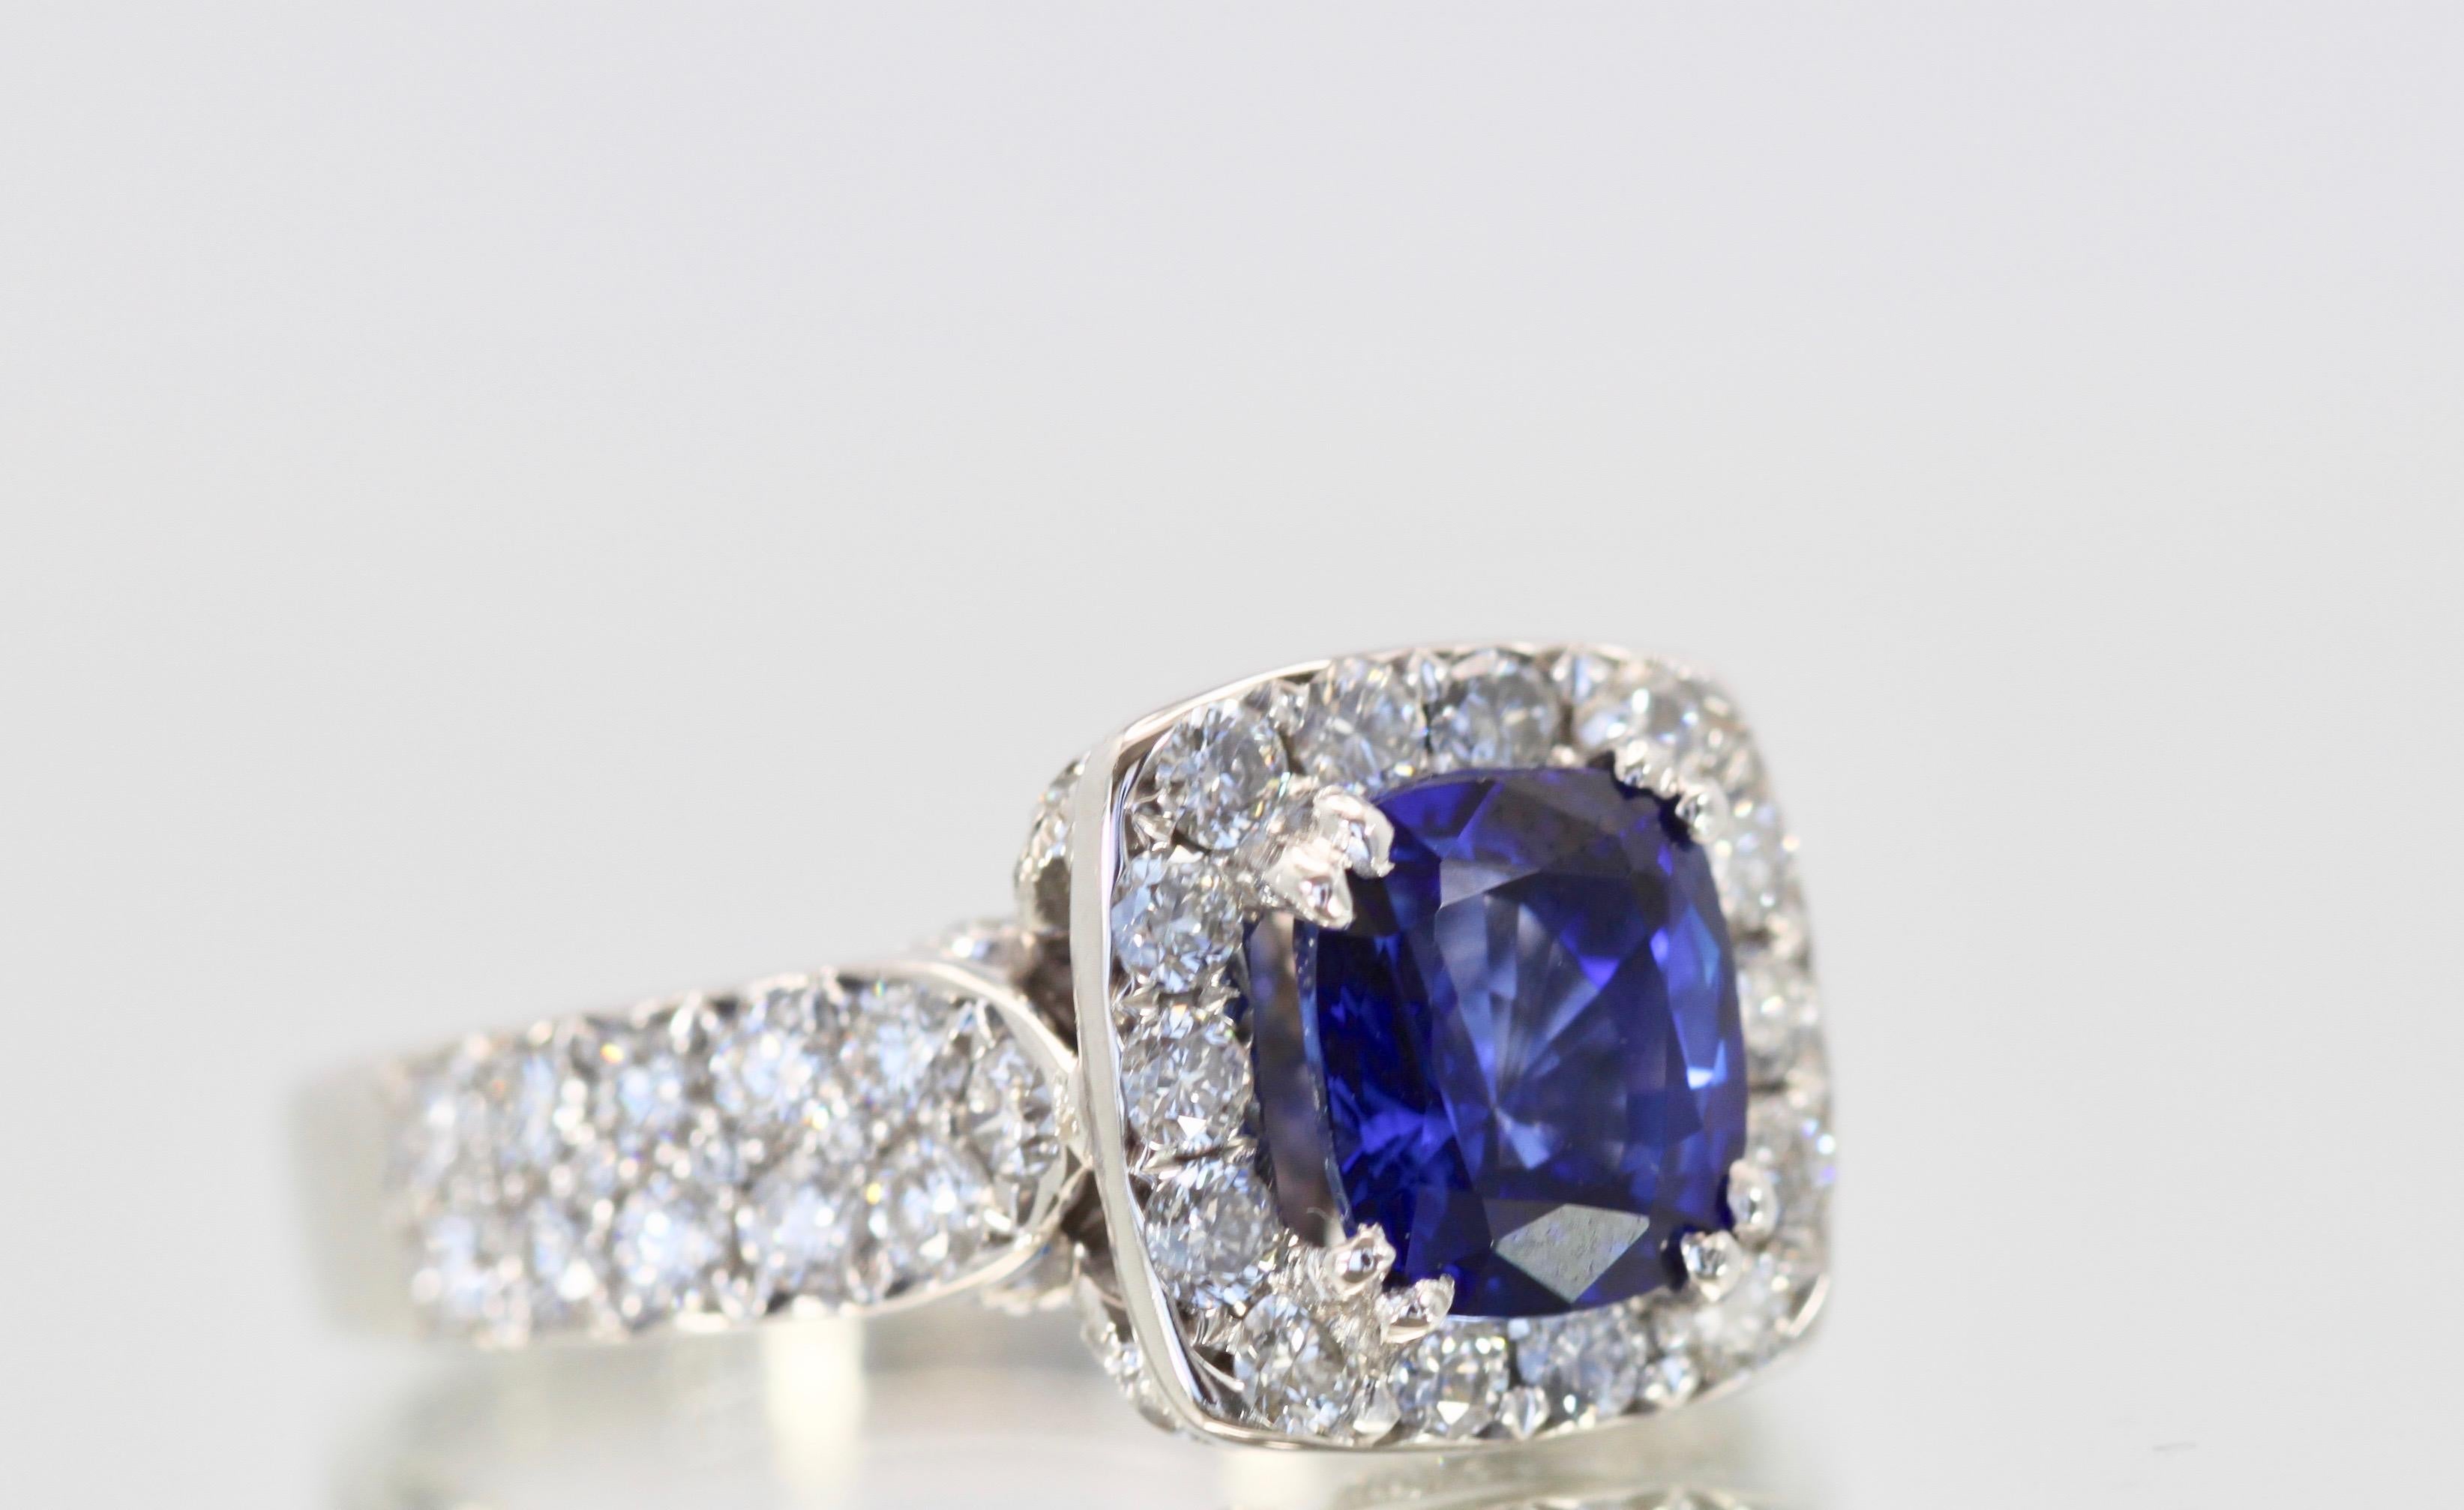 Contemporary Burma Sapphire Ring with Diamond Surround 18 Karat For Sale